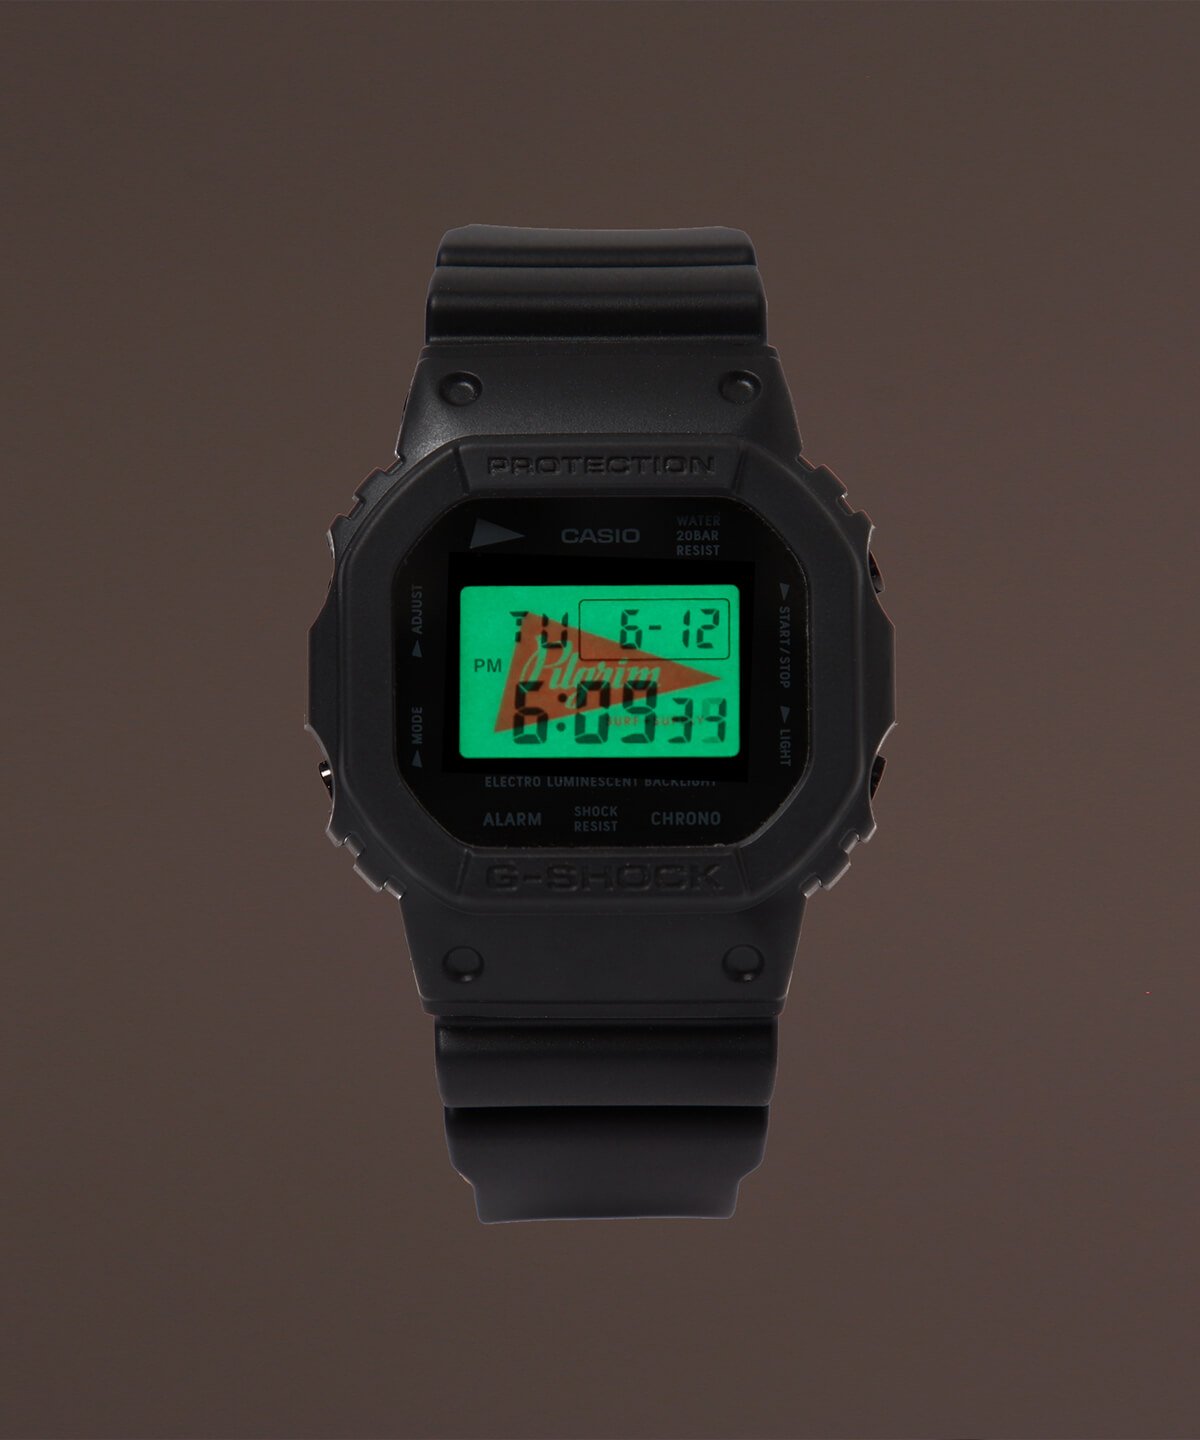 Pilgrim Surf + Supply x G-Shock DW-5600 Collaboration Watch